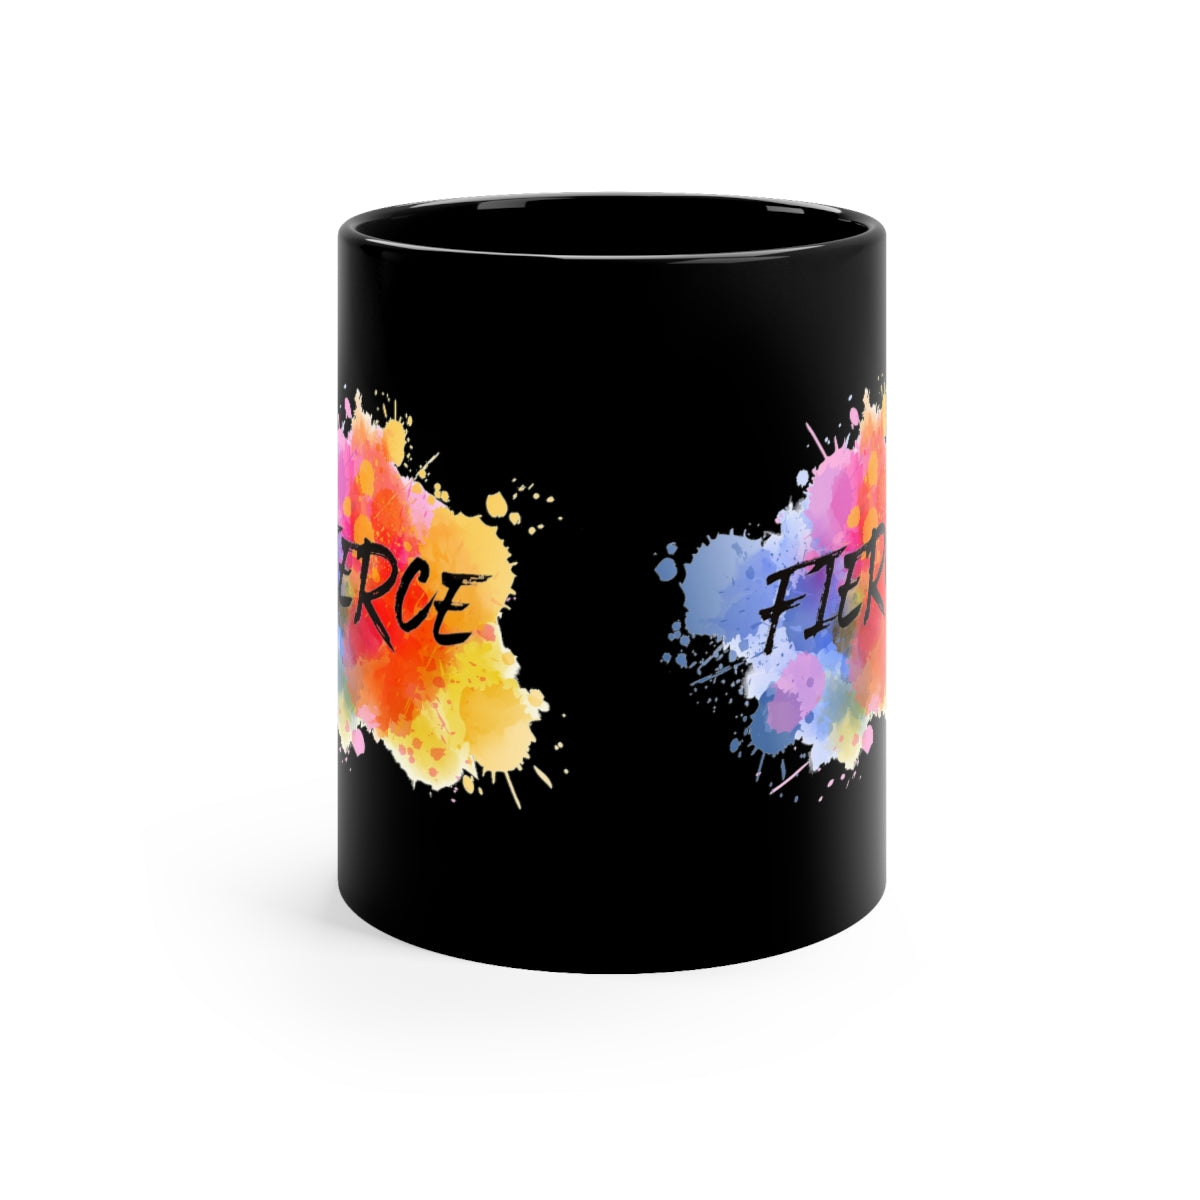 "Fierce" Black Ceramic Mug 11oz